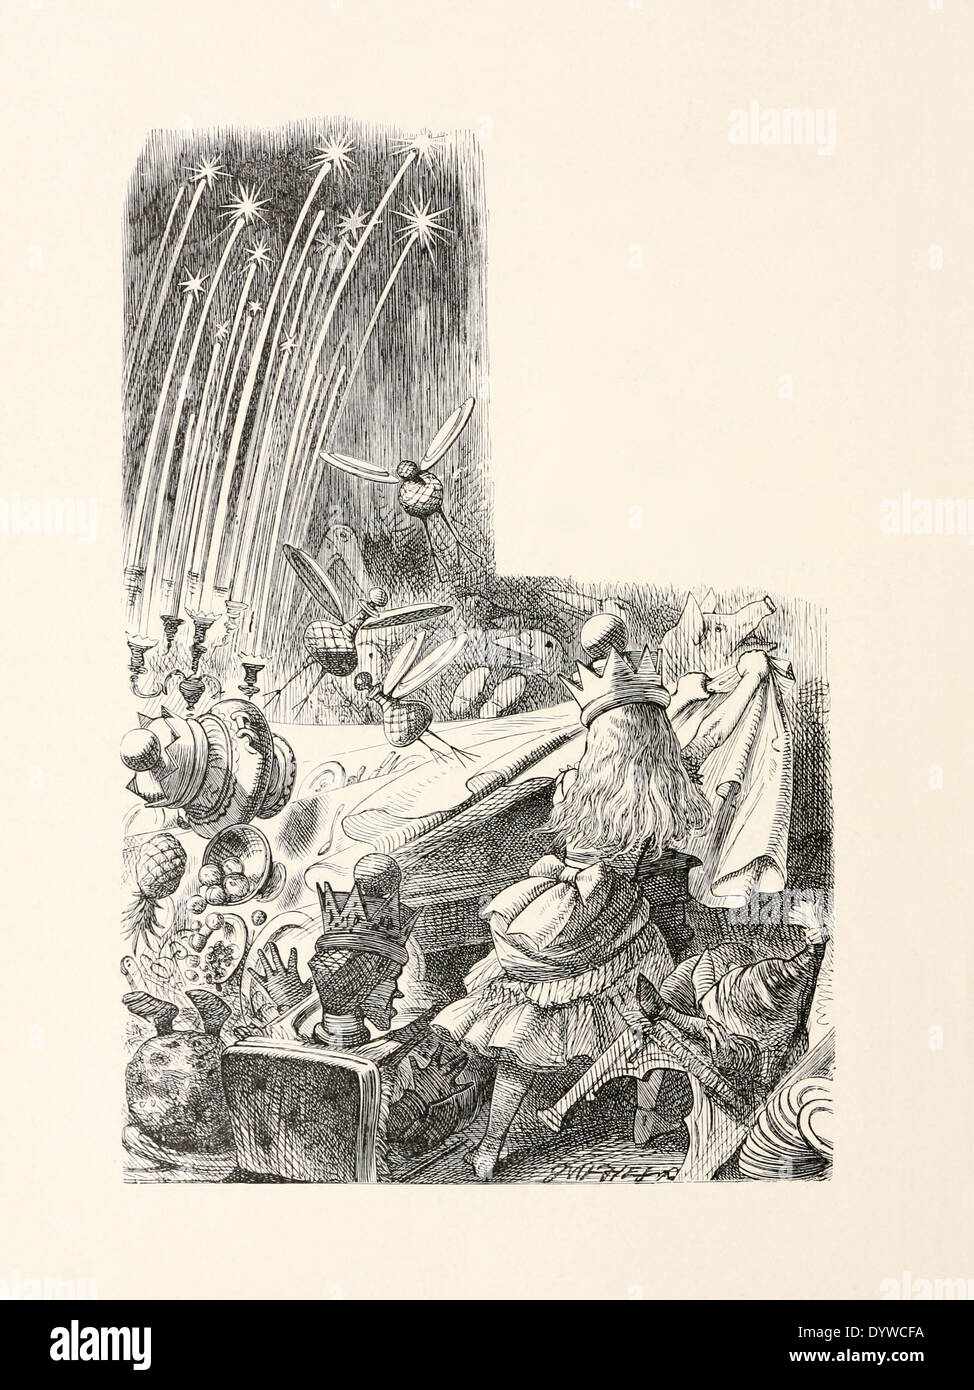 John Tenniel (1820-1914) Illustration aus Carrolls "Through the Looking-Glass", veröffentlicht im Jahre 1871. Zieht das Tischtuch. Stockfoto